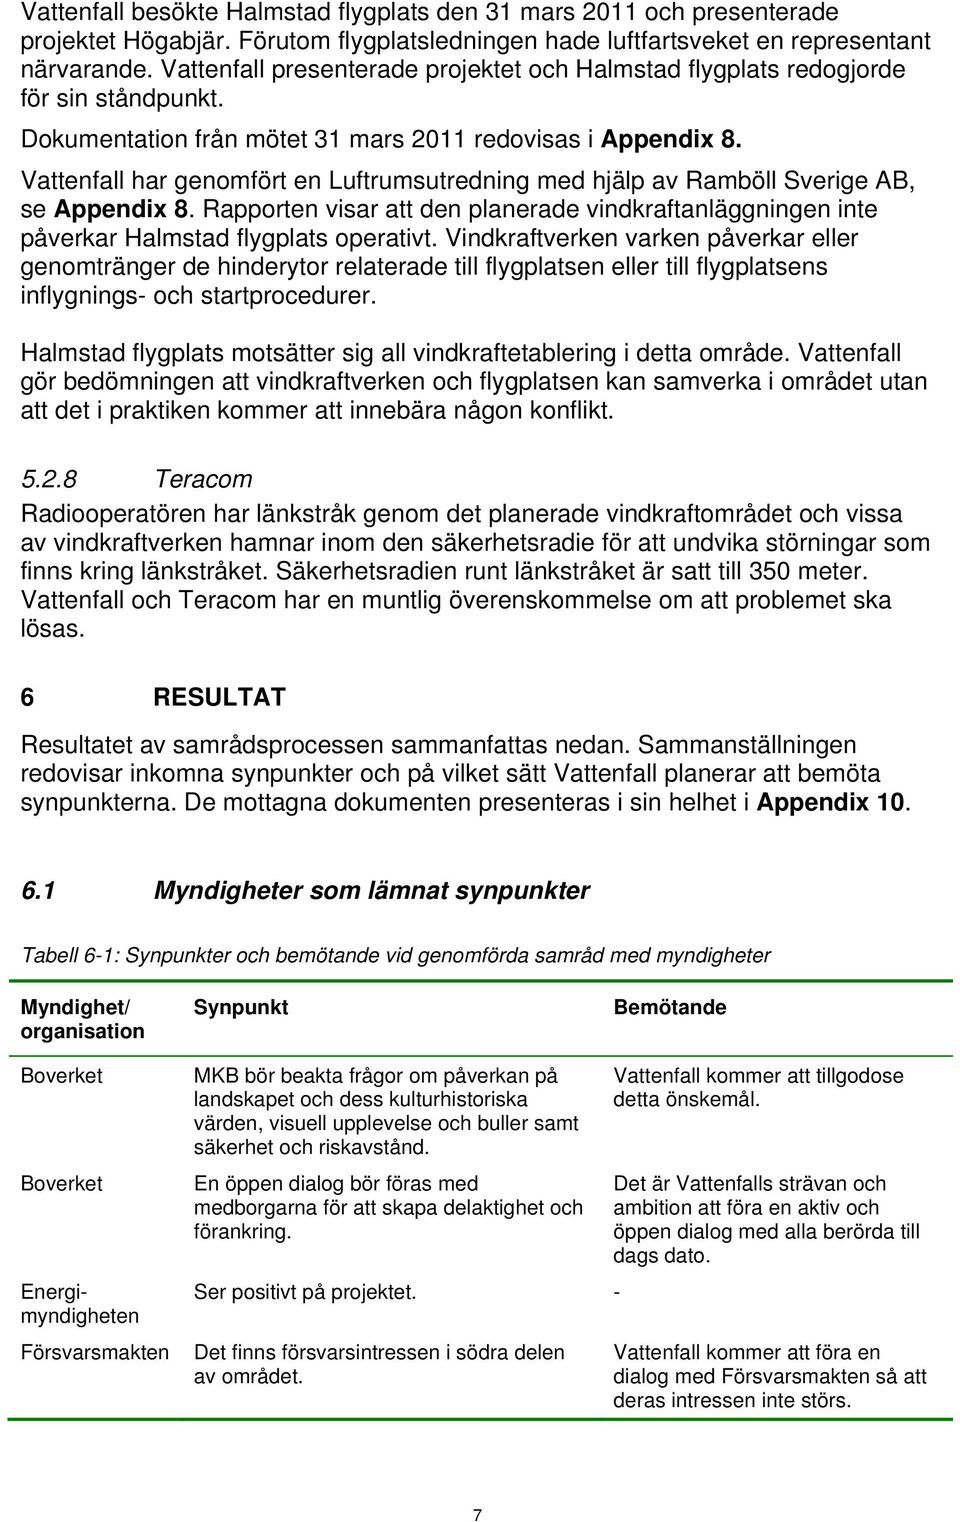 Vattenfall har genomfört en Luftrumsutredning med hjälp av Ramböll Sverige AB, se Appendix 8. Rapporten visar att den planerade vindkraftanläggningen inte påverkar Halmstad flygplats operativt.